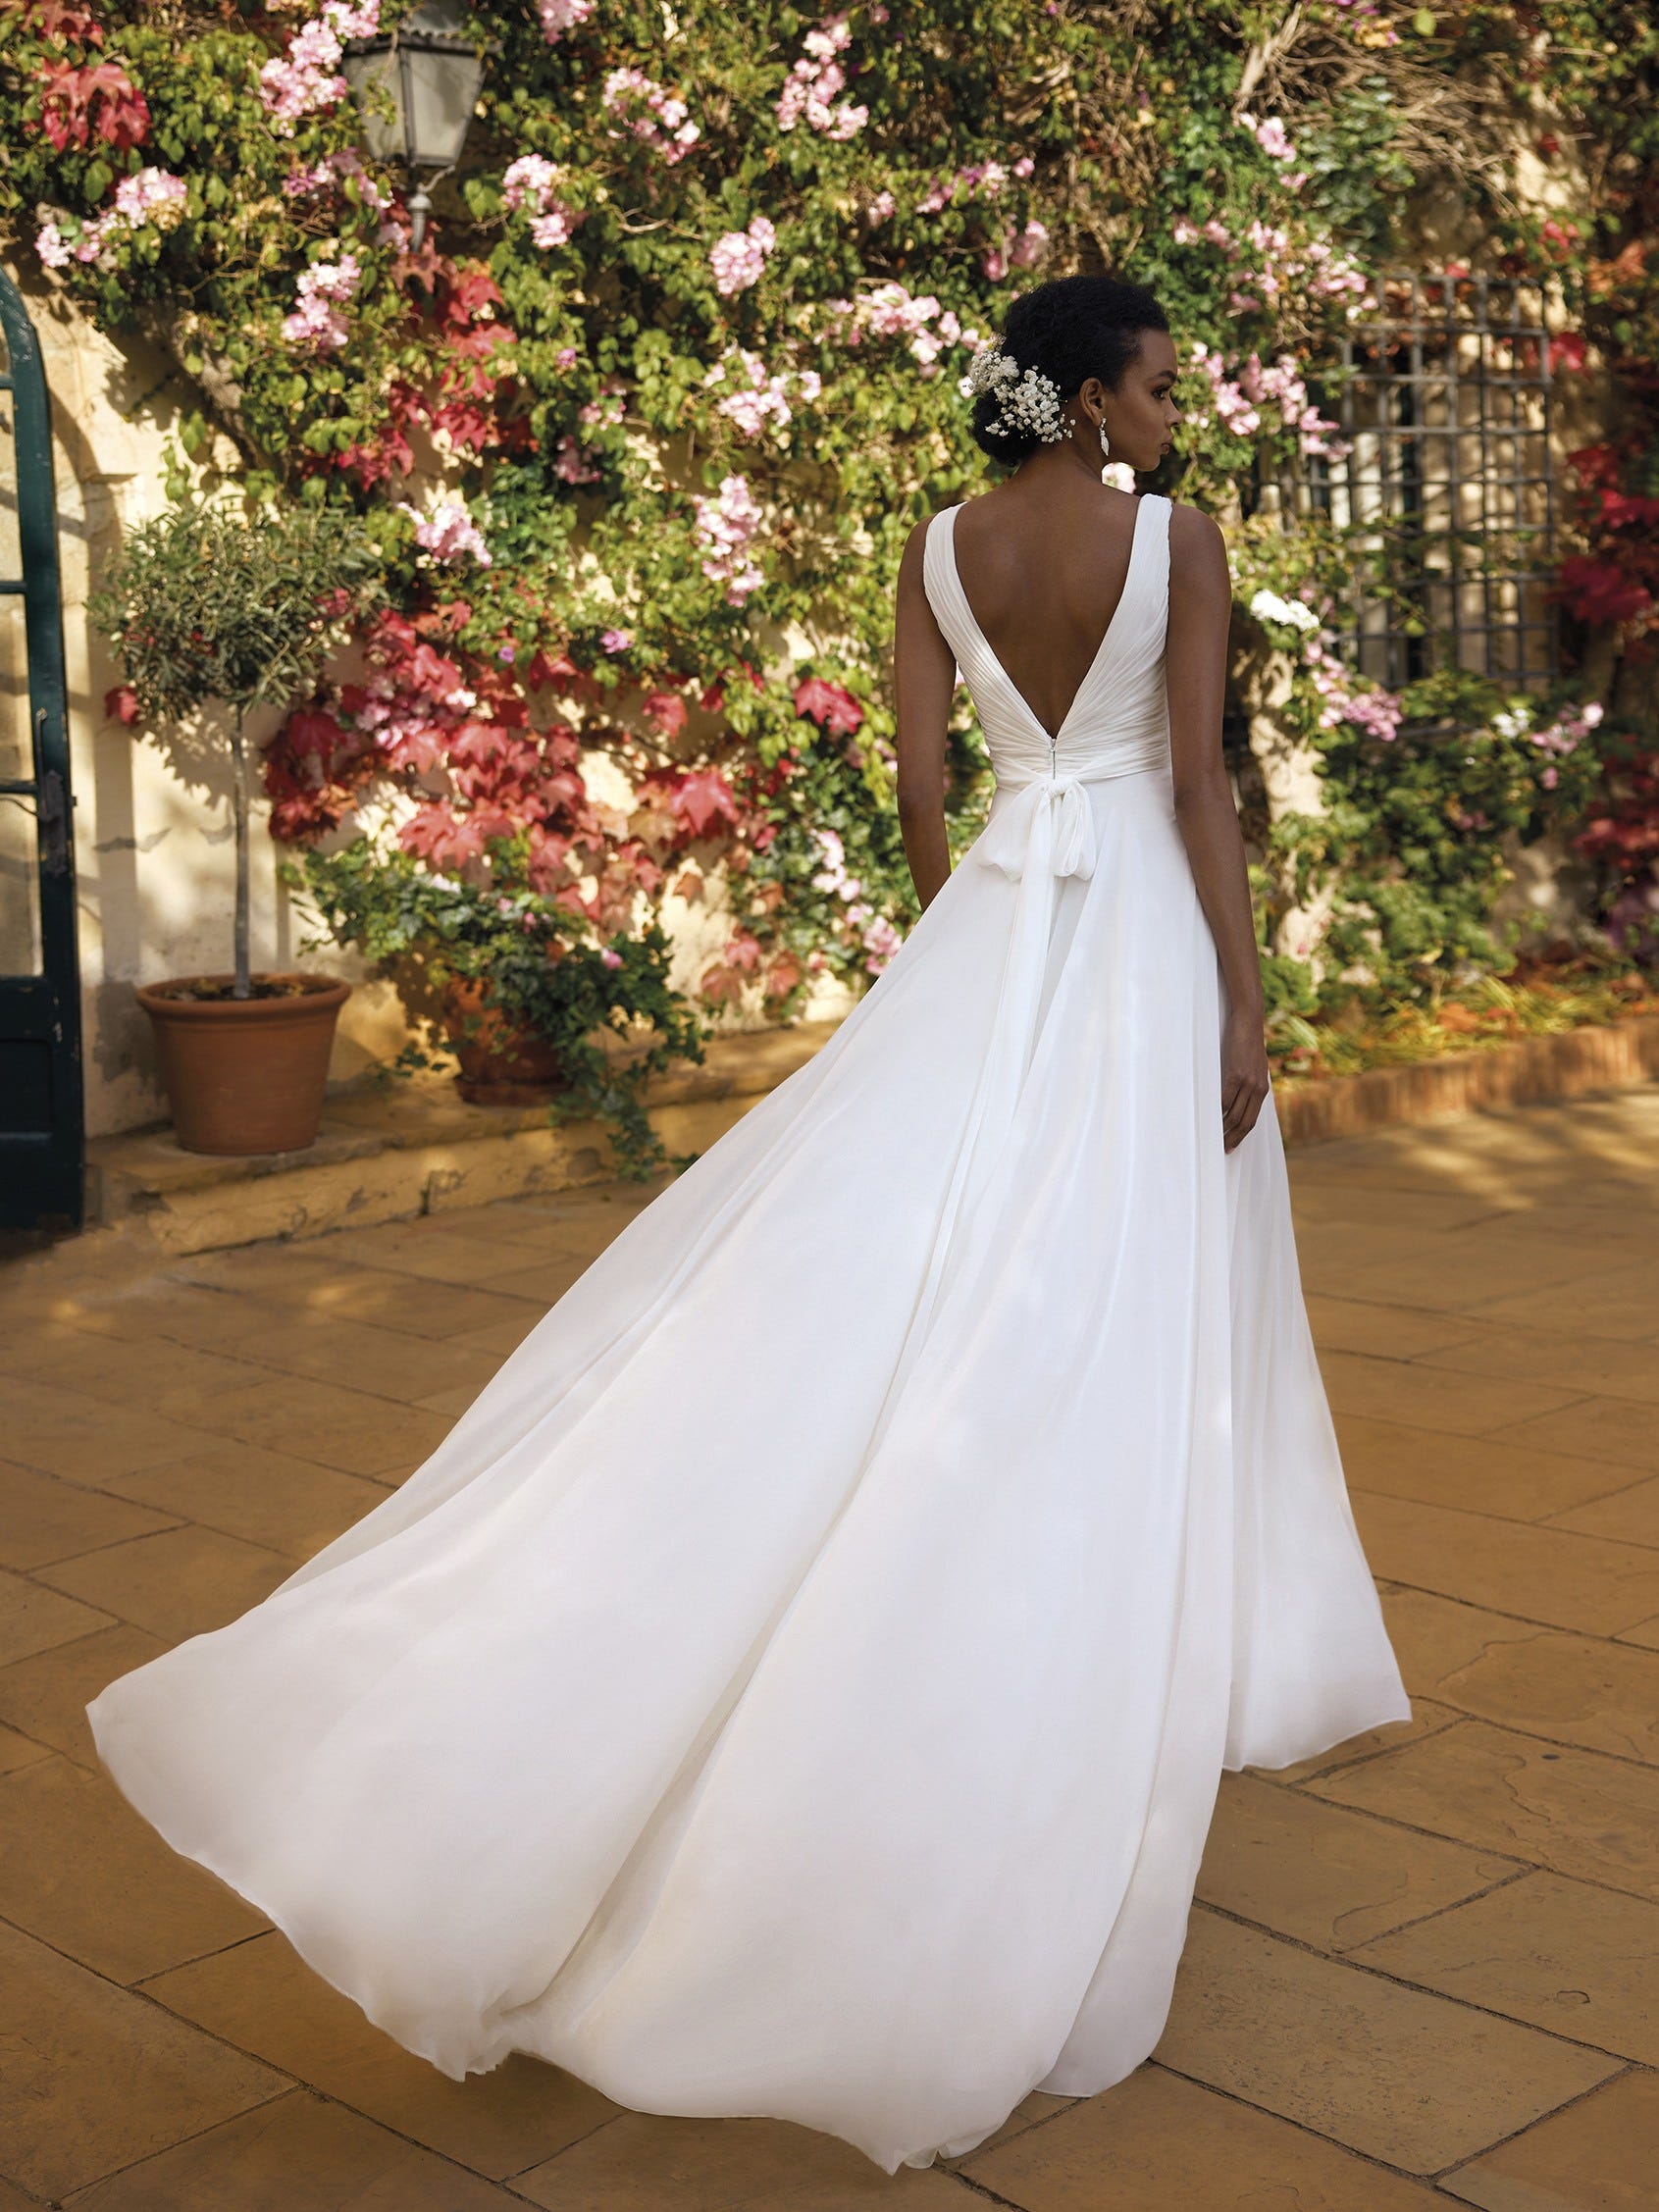 Martina Liana | The Bridal Collection Colorado's Top Bridal Salon